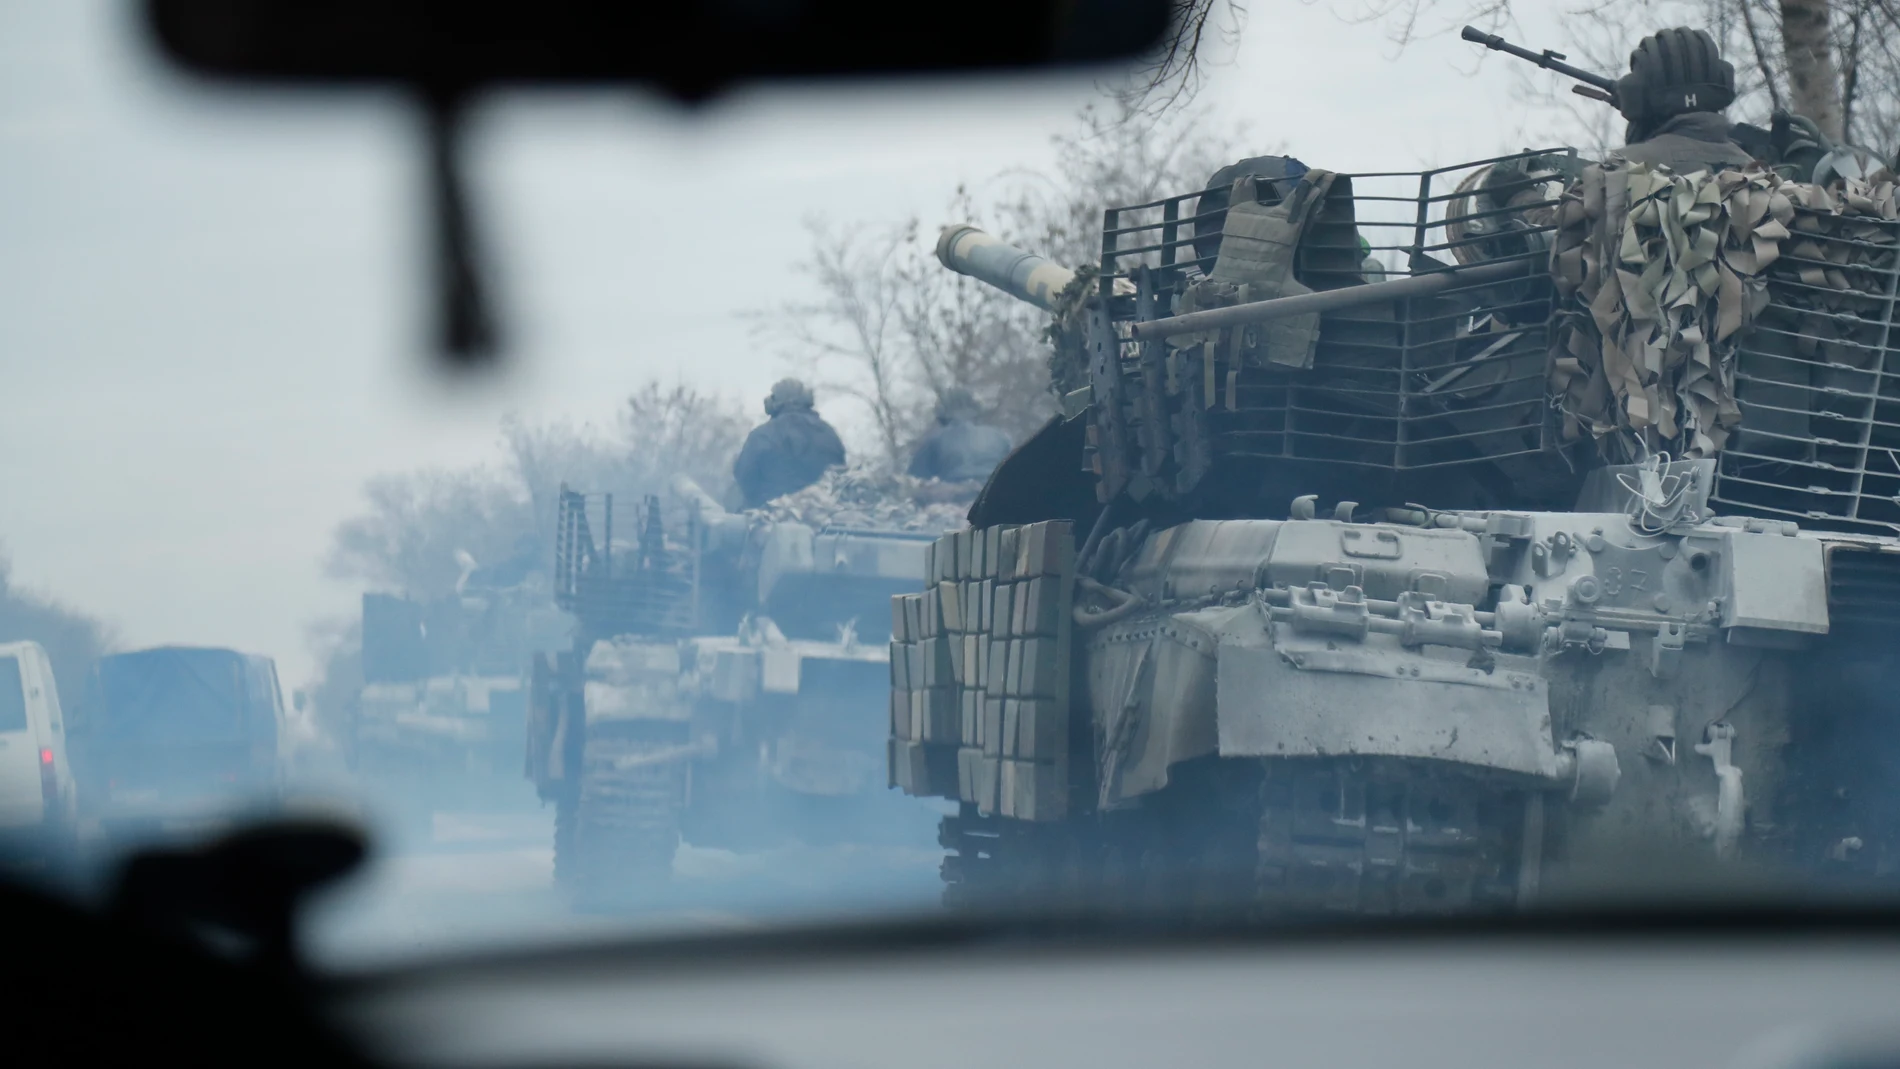 Qué significa la letra Z en los camiones y tanques rusos en Ucrania